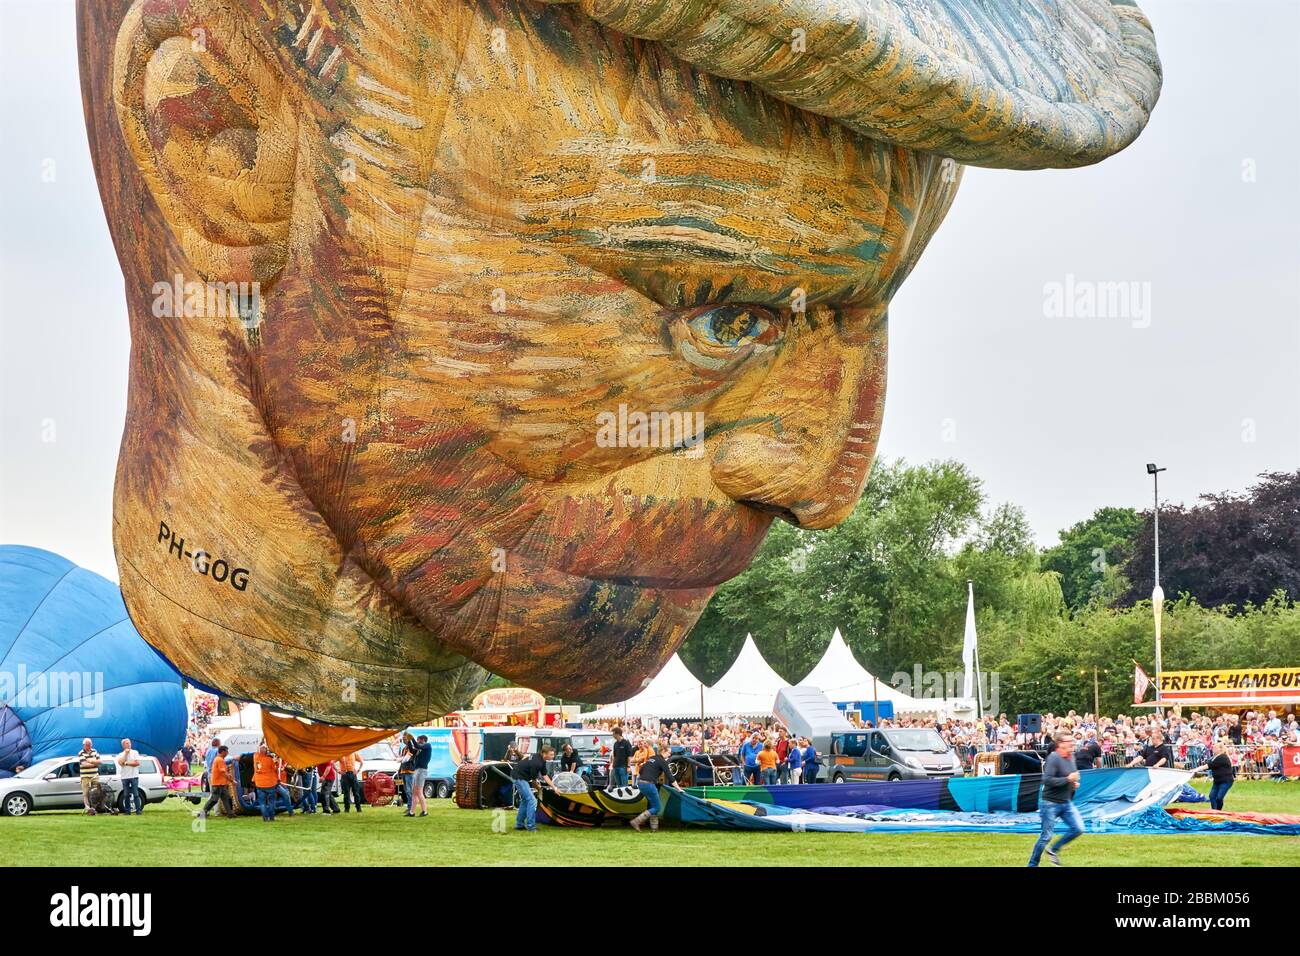 Ballon à air chaud de forme spéciale en forme de tête de Vincent van Gogh lors du 34e festival de ballonfeesten de la Frie, à Joure, aux pays-Bas. Banque D'Images